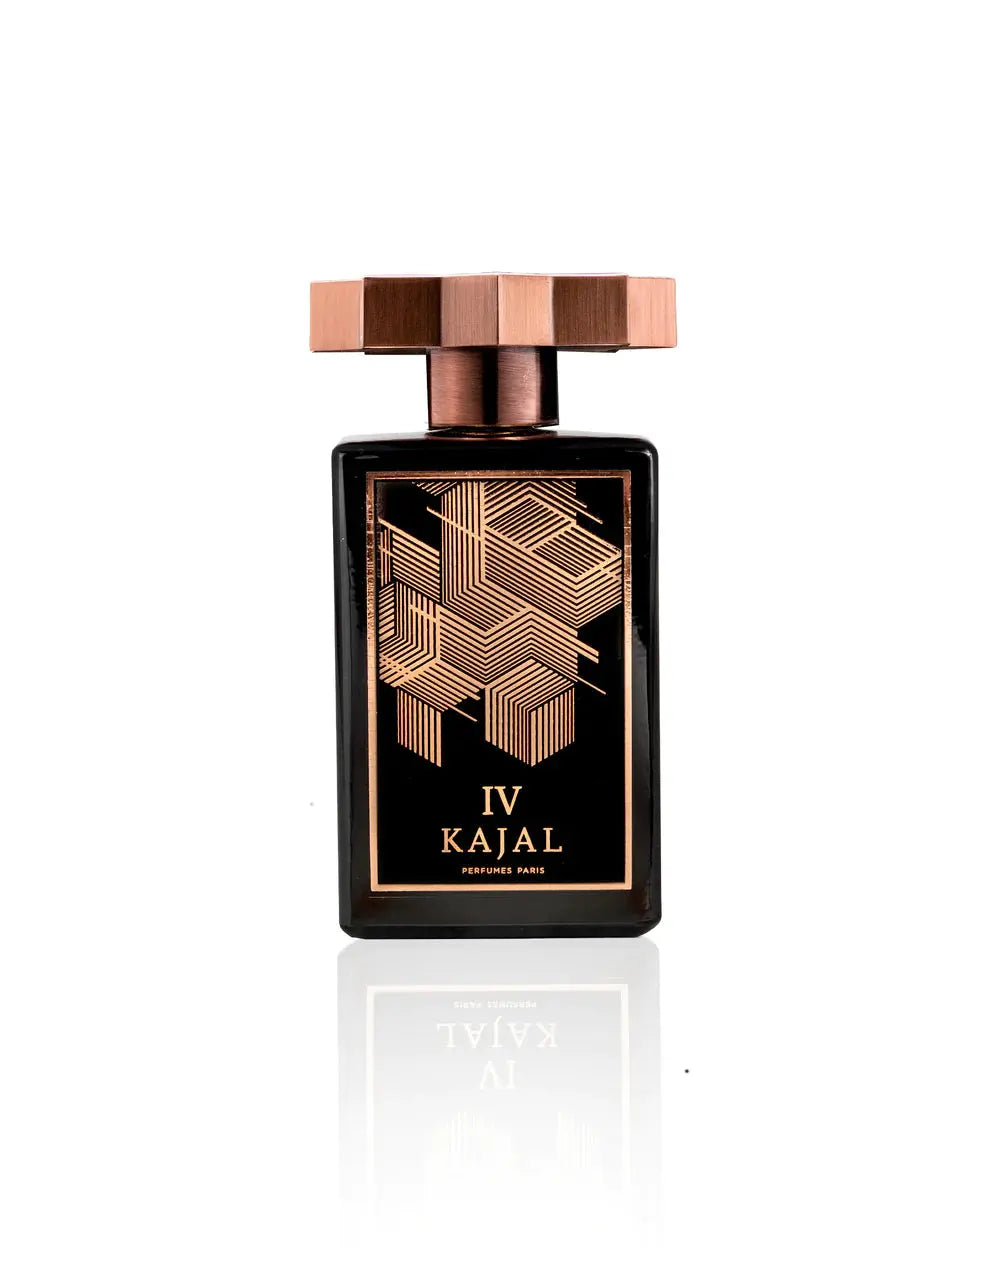 Kajal Homme IV eau de parfum - 100 ml